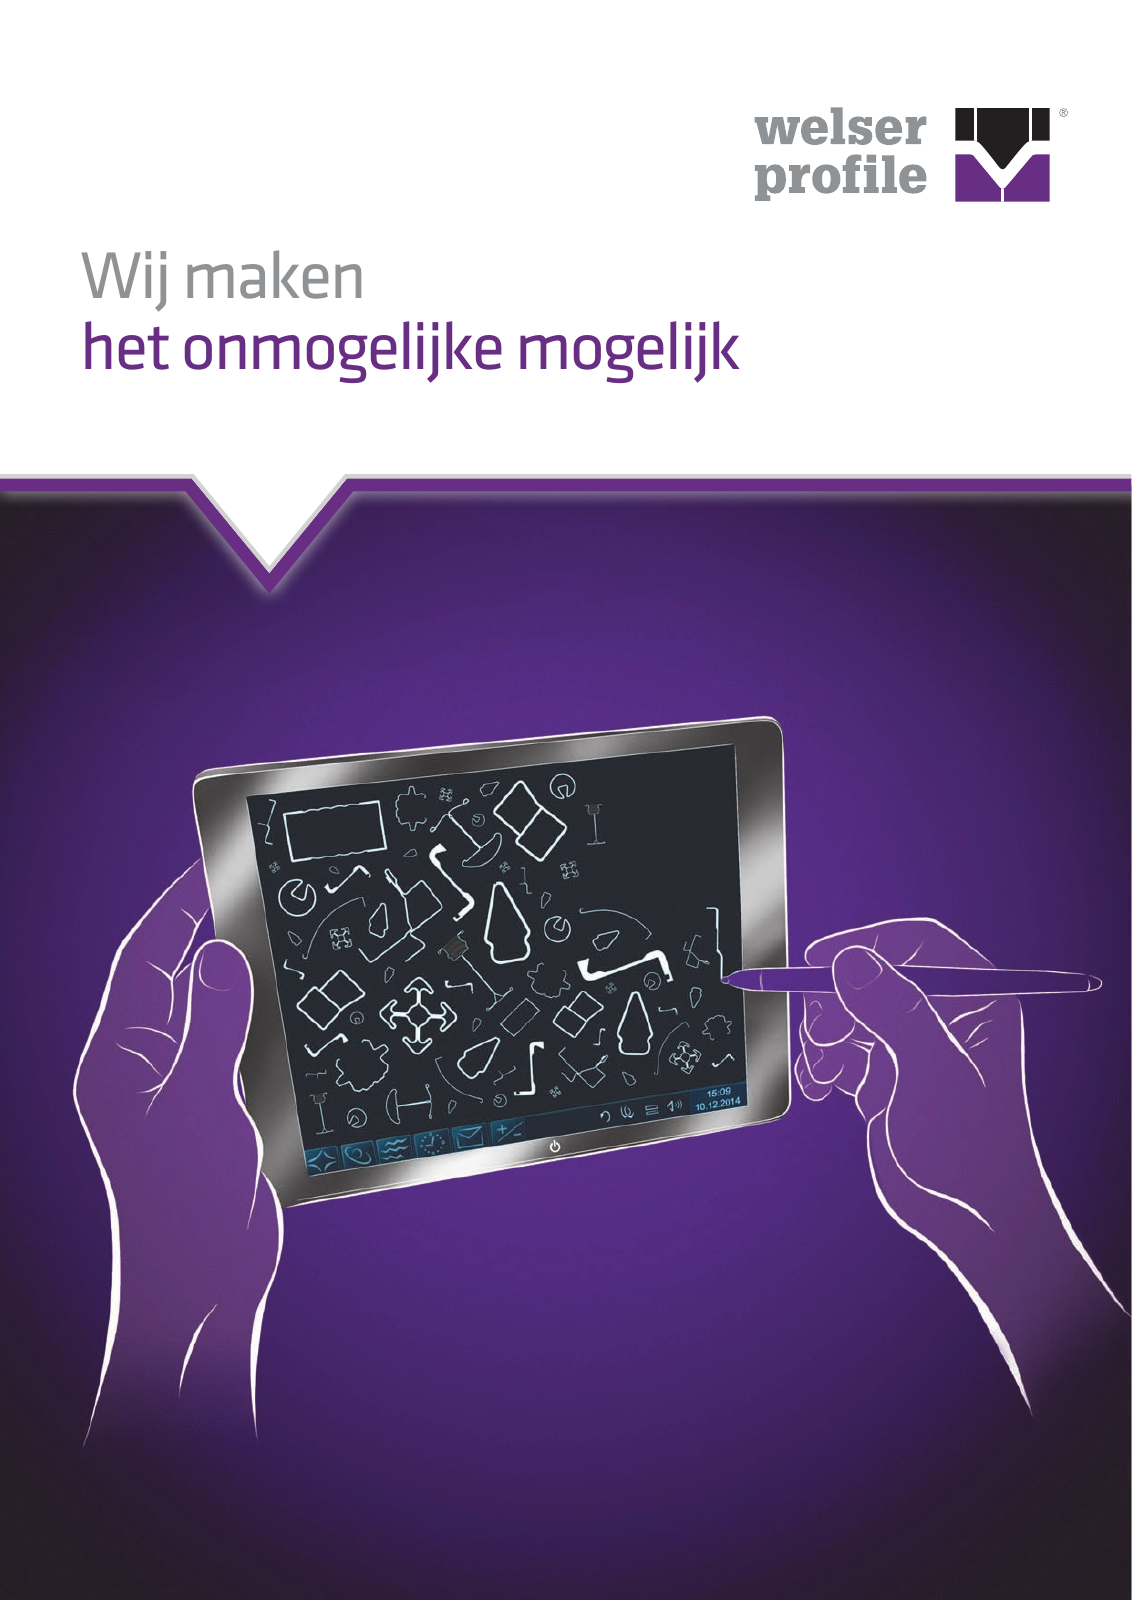 Vorschau Welser - Technologiefolder (NL) Seite 1